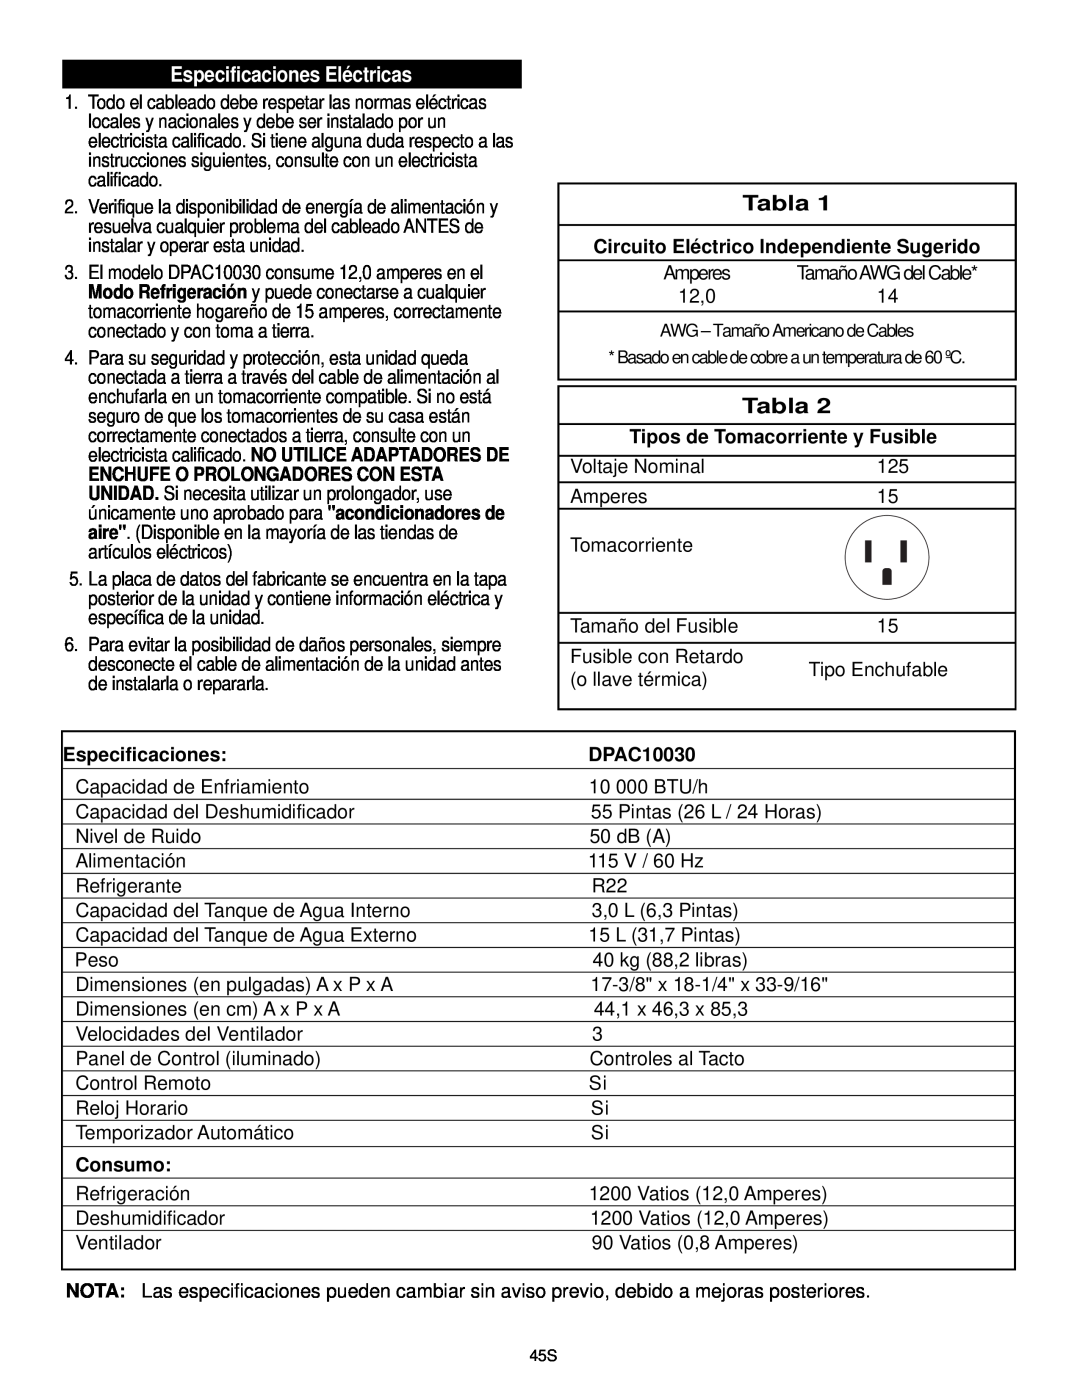 Danby DPAC10030 manual Especificaciones Eléctricas, Tabla, Circuito Eléctrico Independiente Sugerido, Consumo 